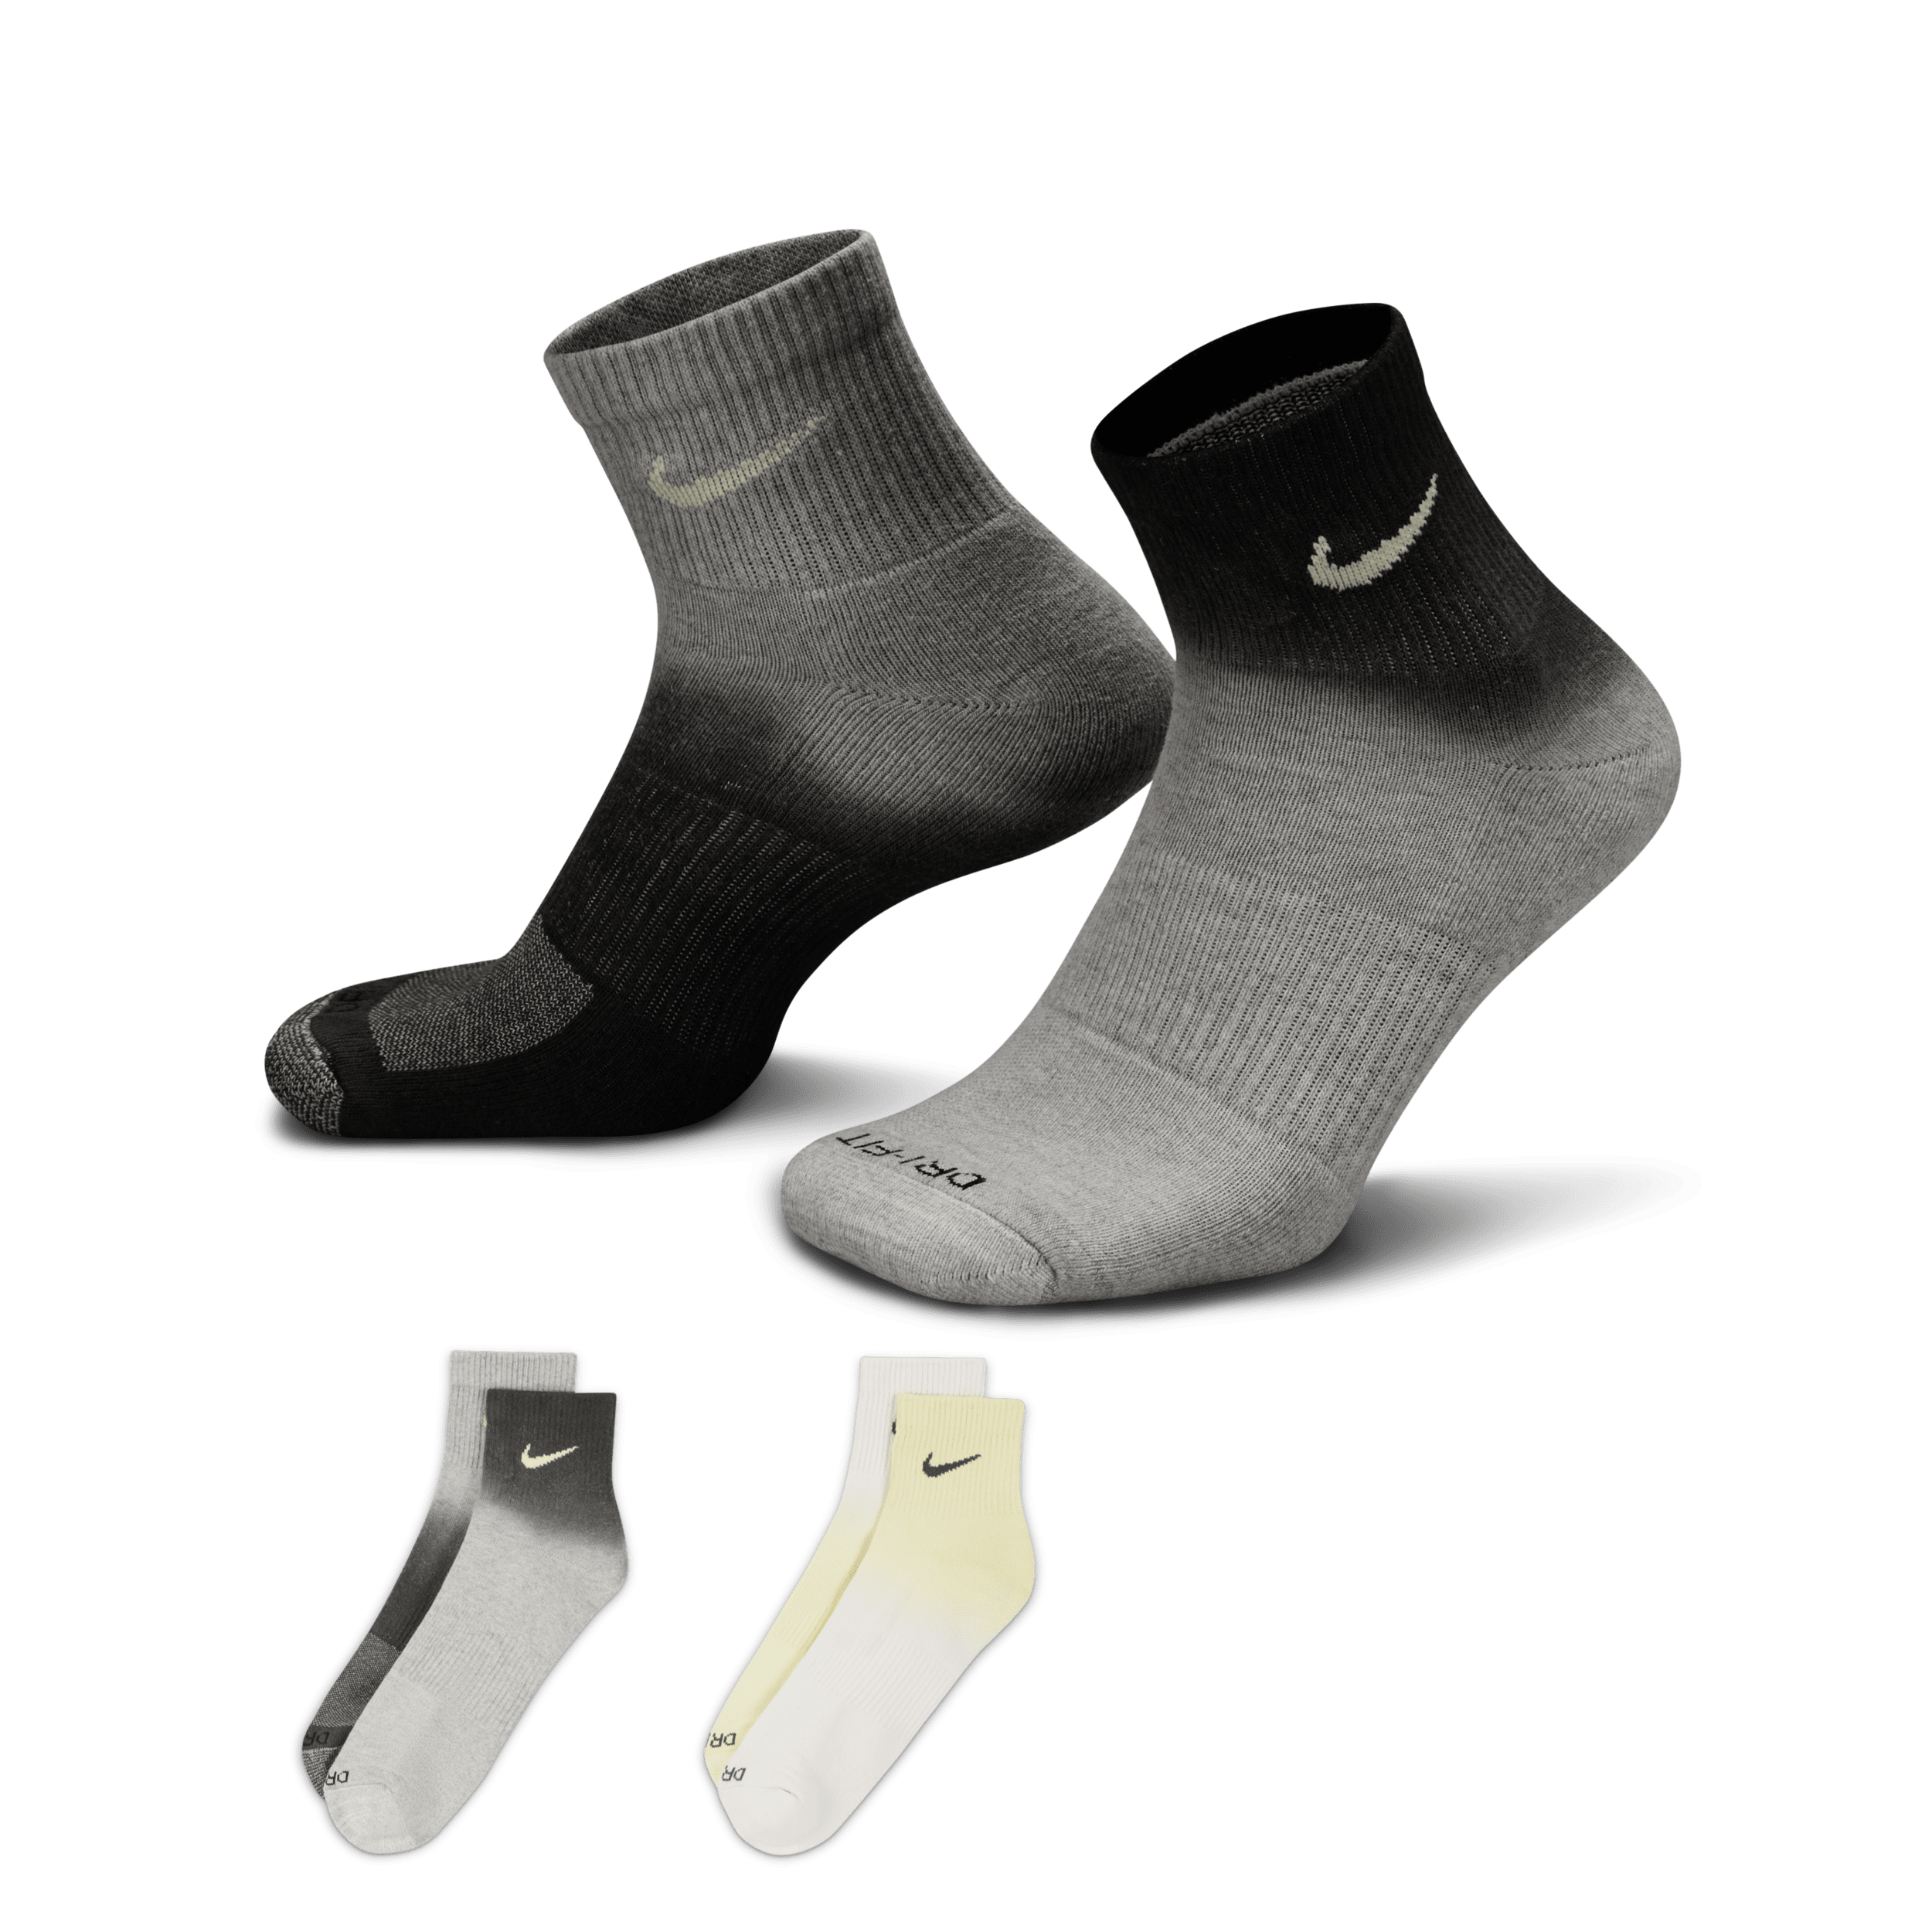 Calze alla caviglia ammortizzate Nike Everyday Plus (2 paia) - Multicolore